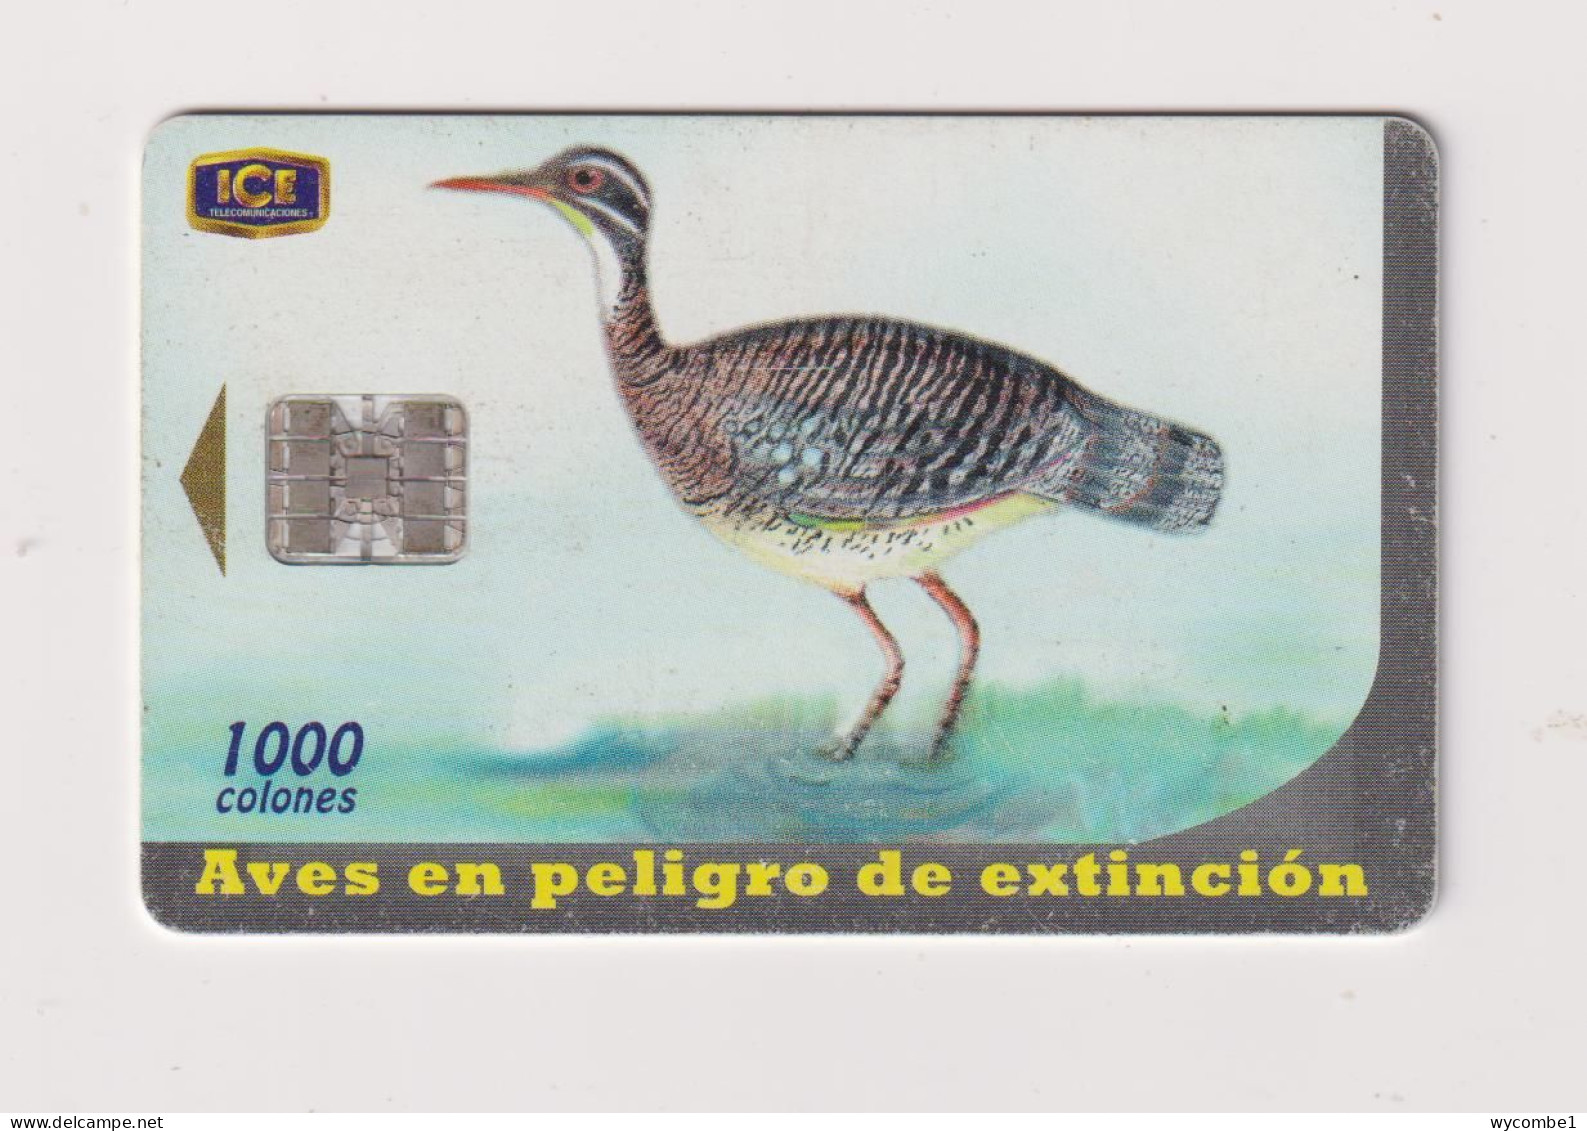 COSTA RICA -   Bird Sunbittern Chip Phonecard - Costa Rica